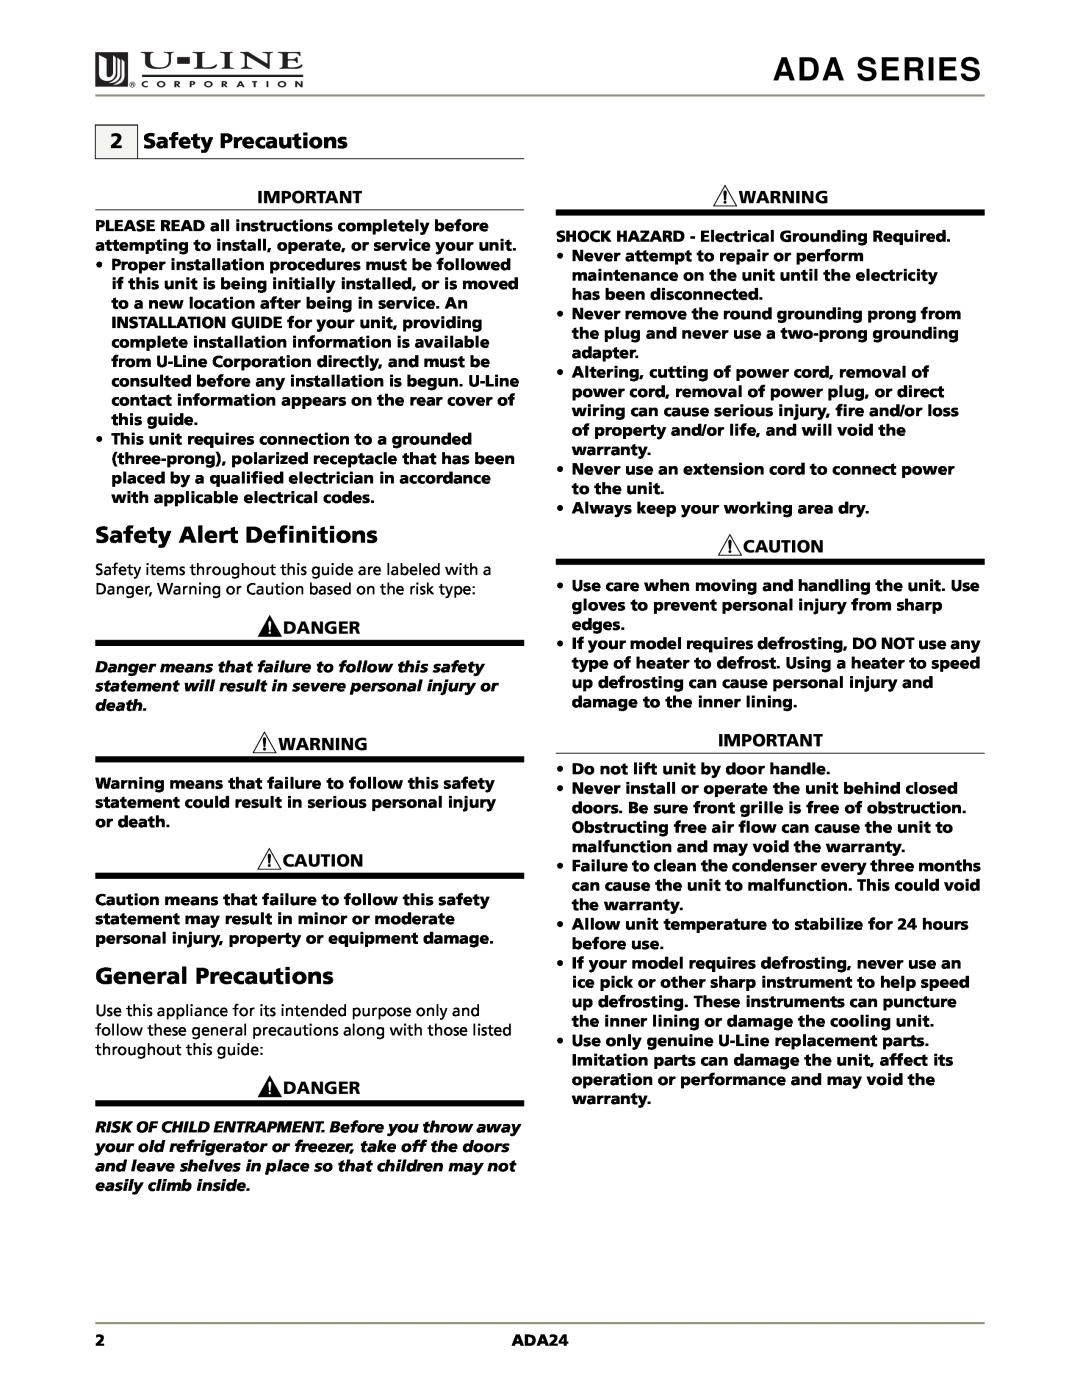 U-Line ADA24RGL manual Safety Alert Definitions, General Precautions, Safety Precautions, Ada Series, Danger 